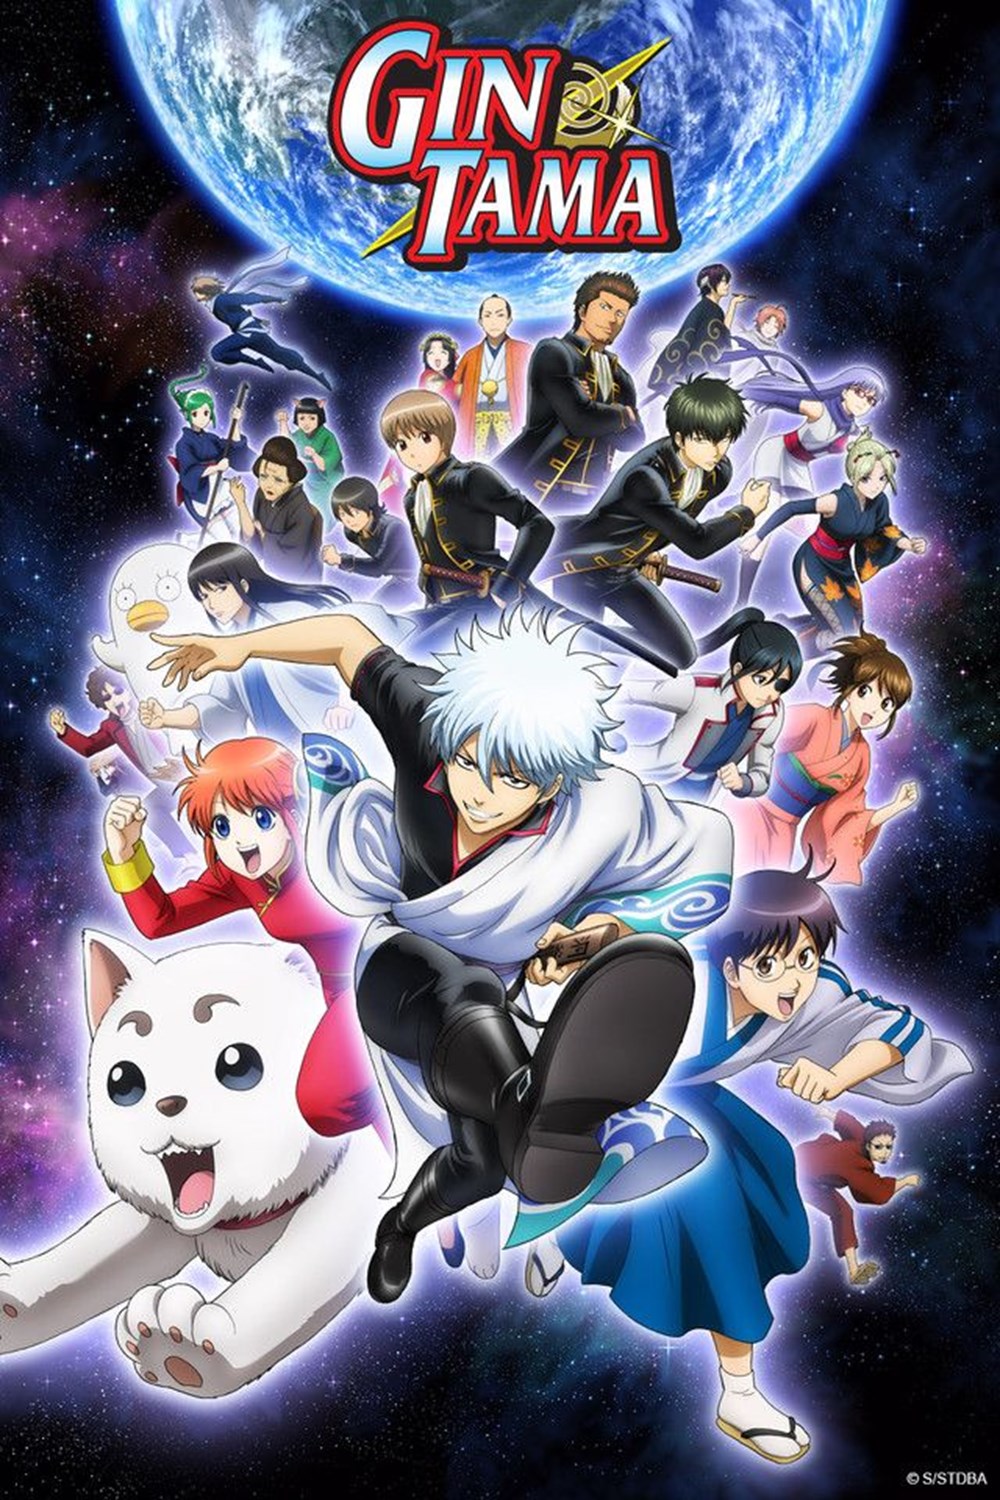 En iyi animeler (IMDb Puan sırasına göre) - 11